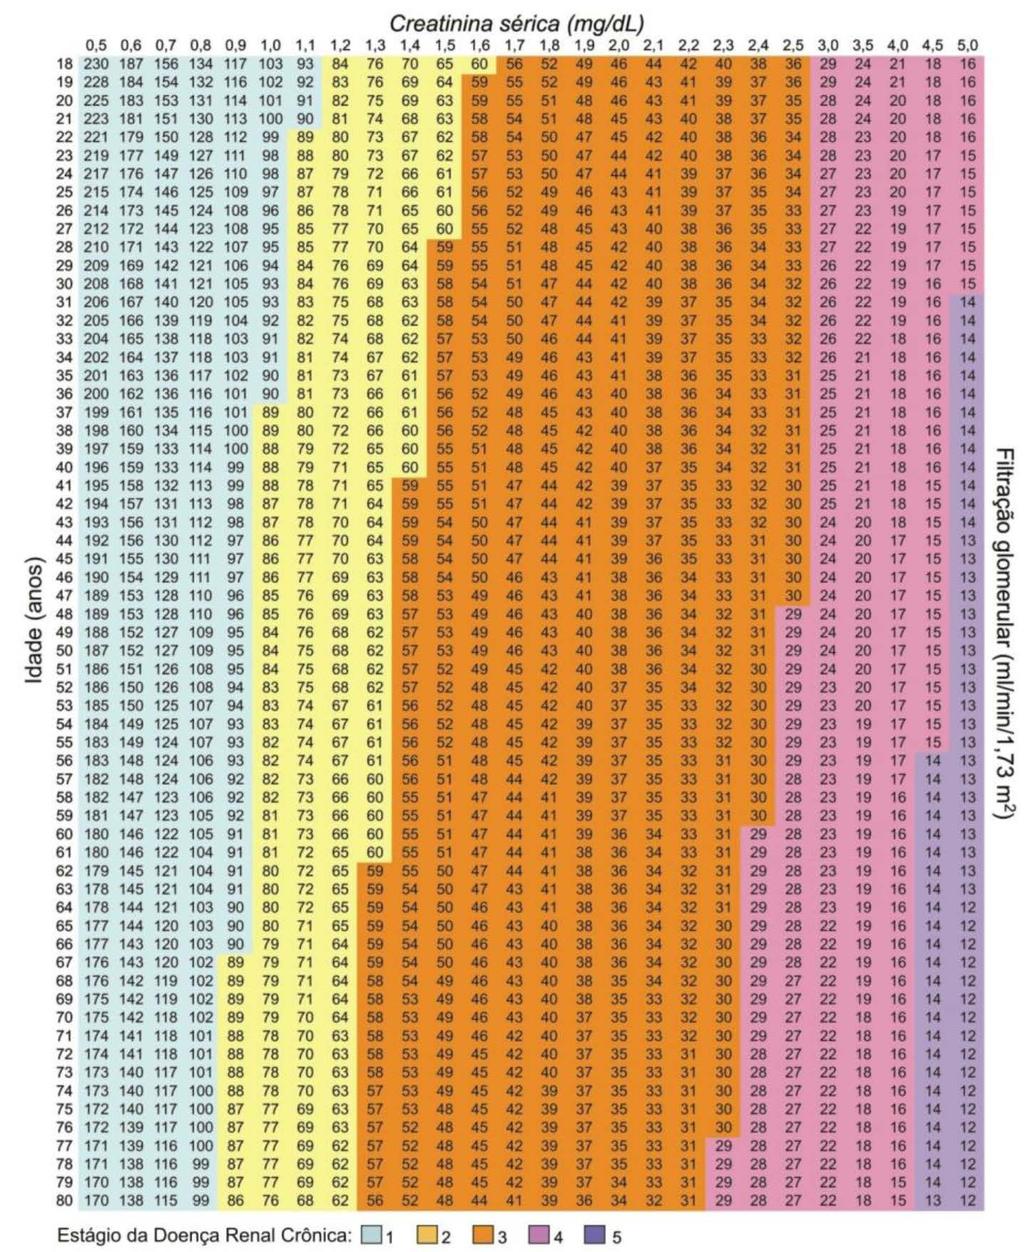 ANEXO B - Tabela Validada para Identificação de TFG através da Fórmula MDRD para Homens. Fonte: BASTOS, R.M.R.; BASTOS, M.